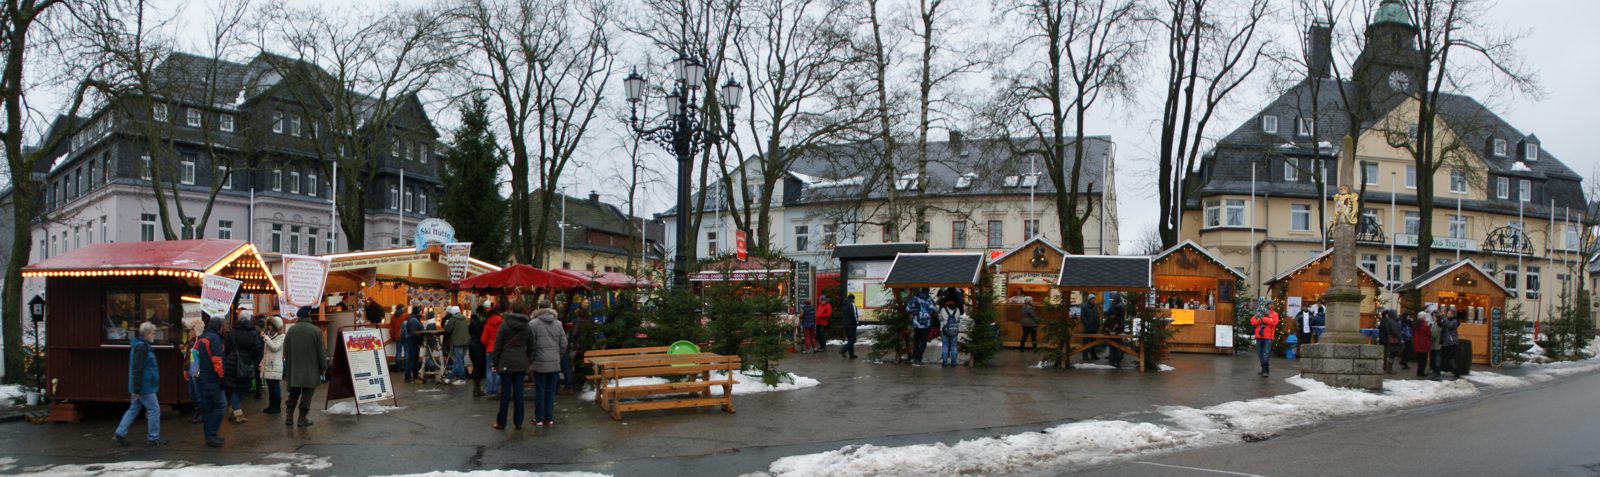 Weihnachtsmarkt Oberwiesenthal